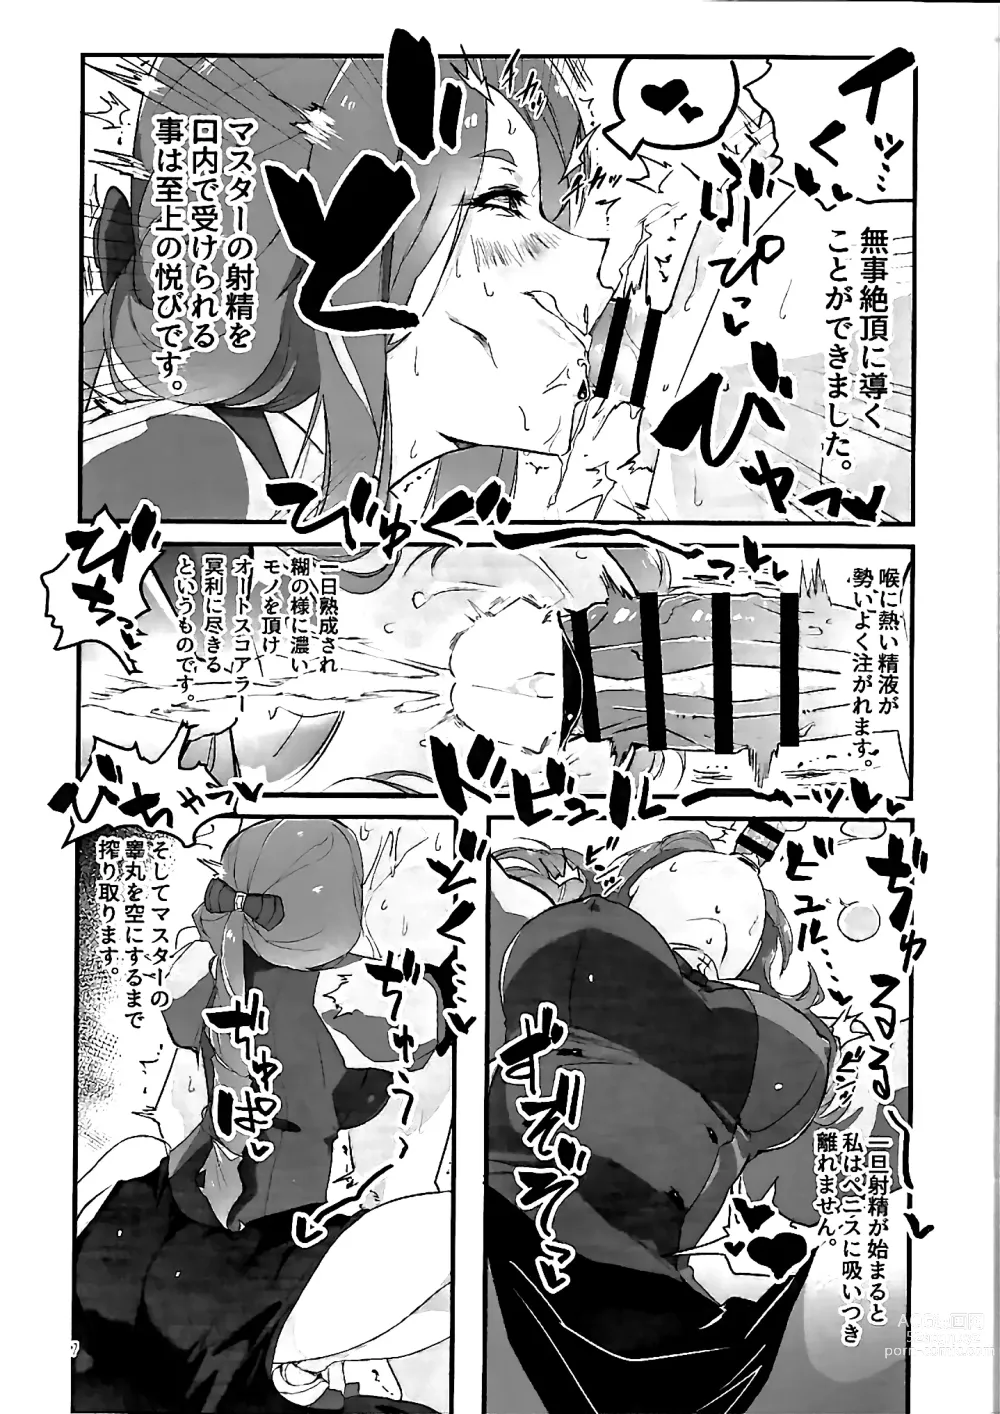 Page 7 of doujinshi Anata ga Master